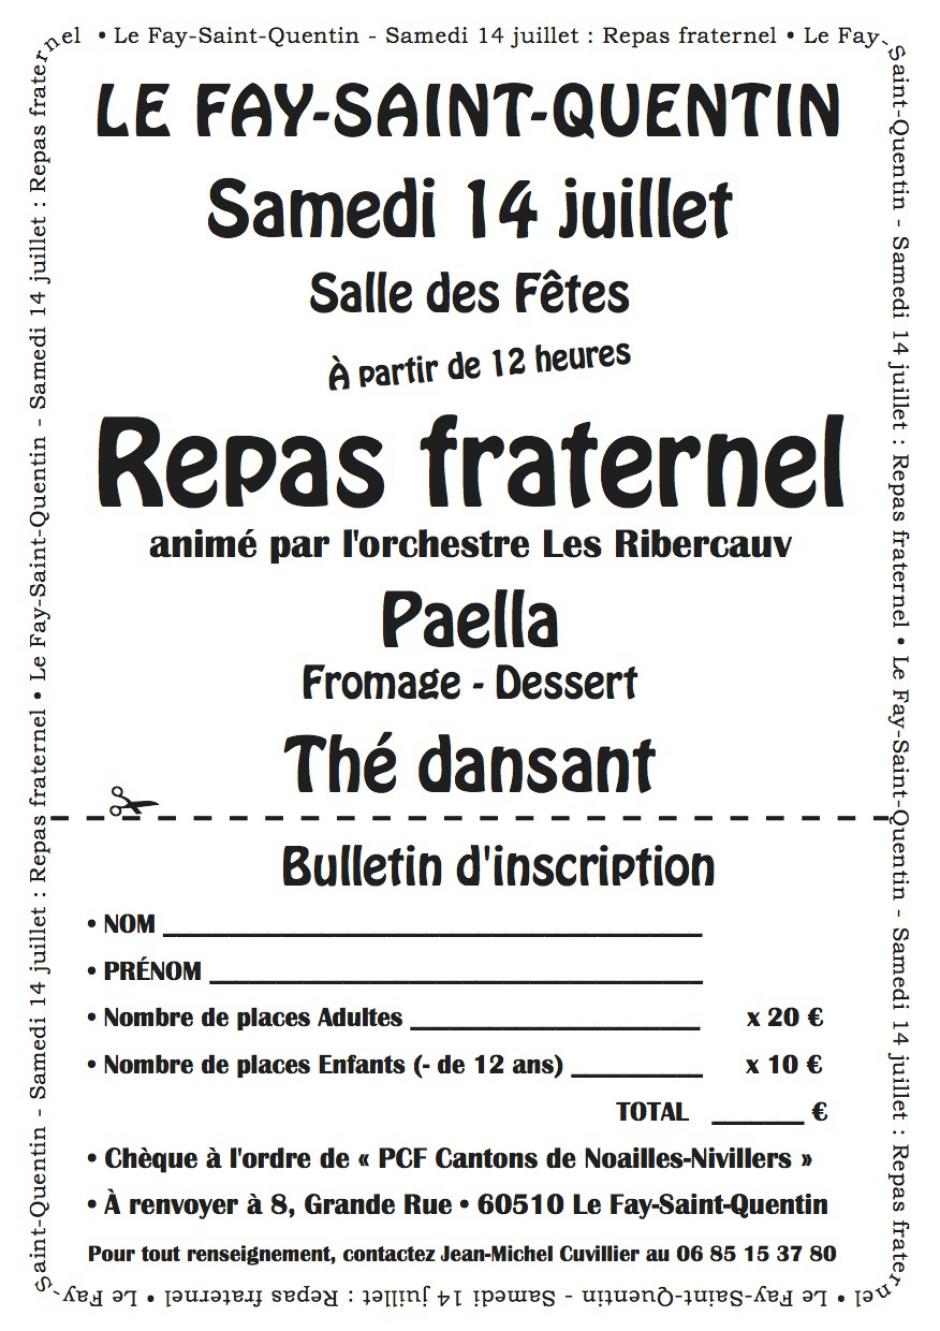 14 juillet, Le Fay-Saint-Quentin - Repas fraternel organisé par la section PCF Noailles-Nivillers